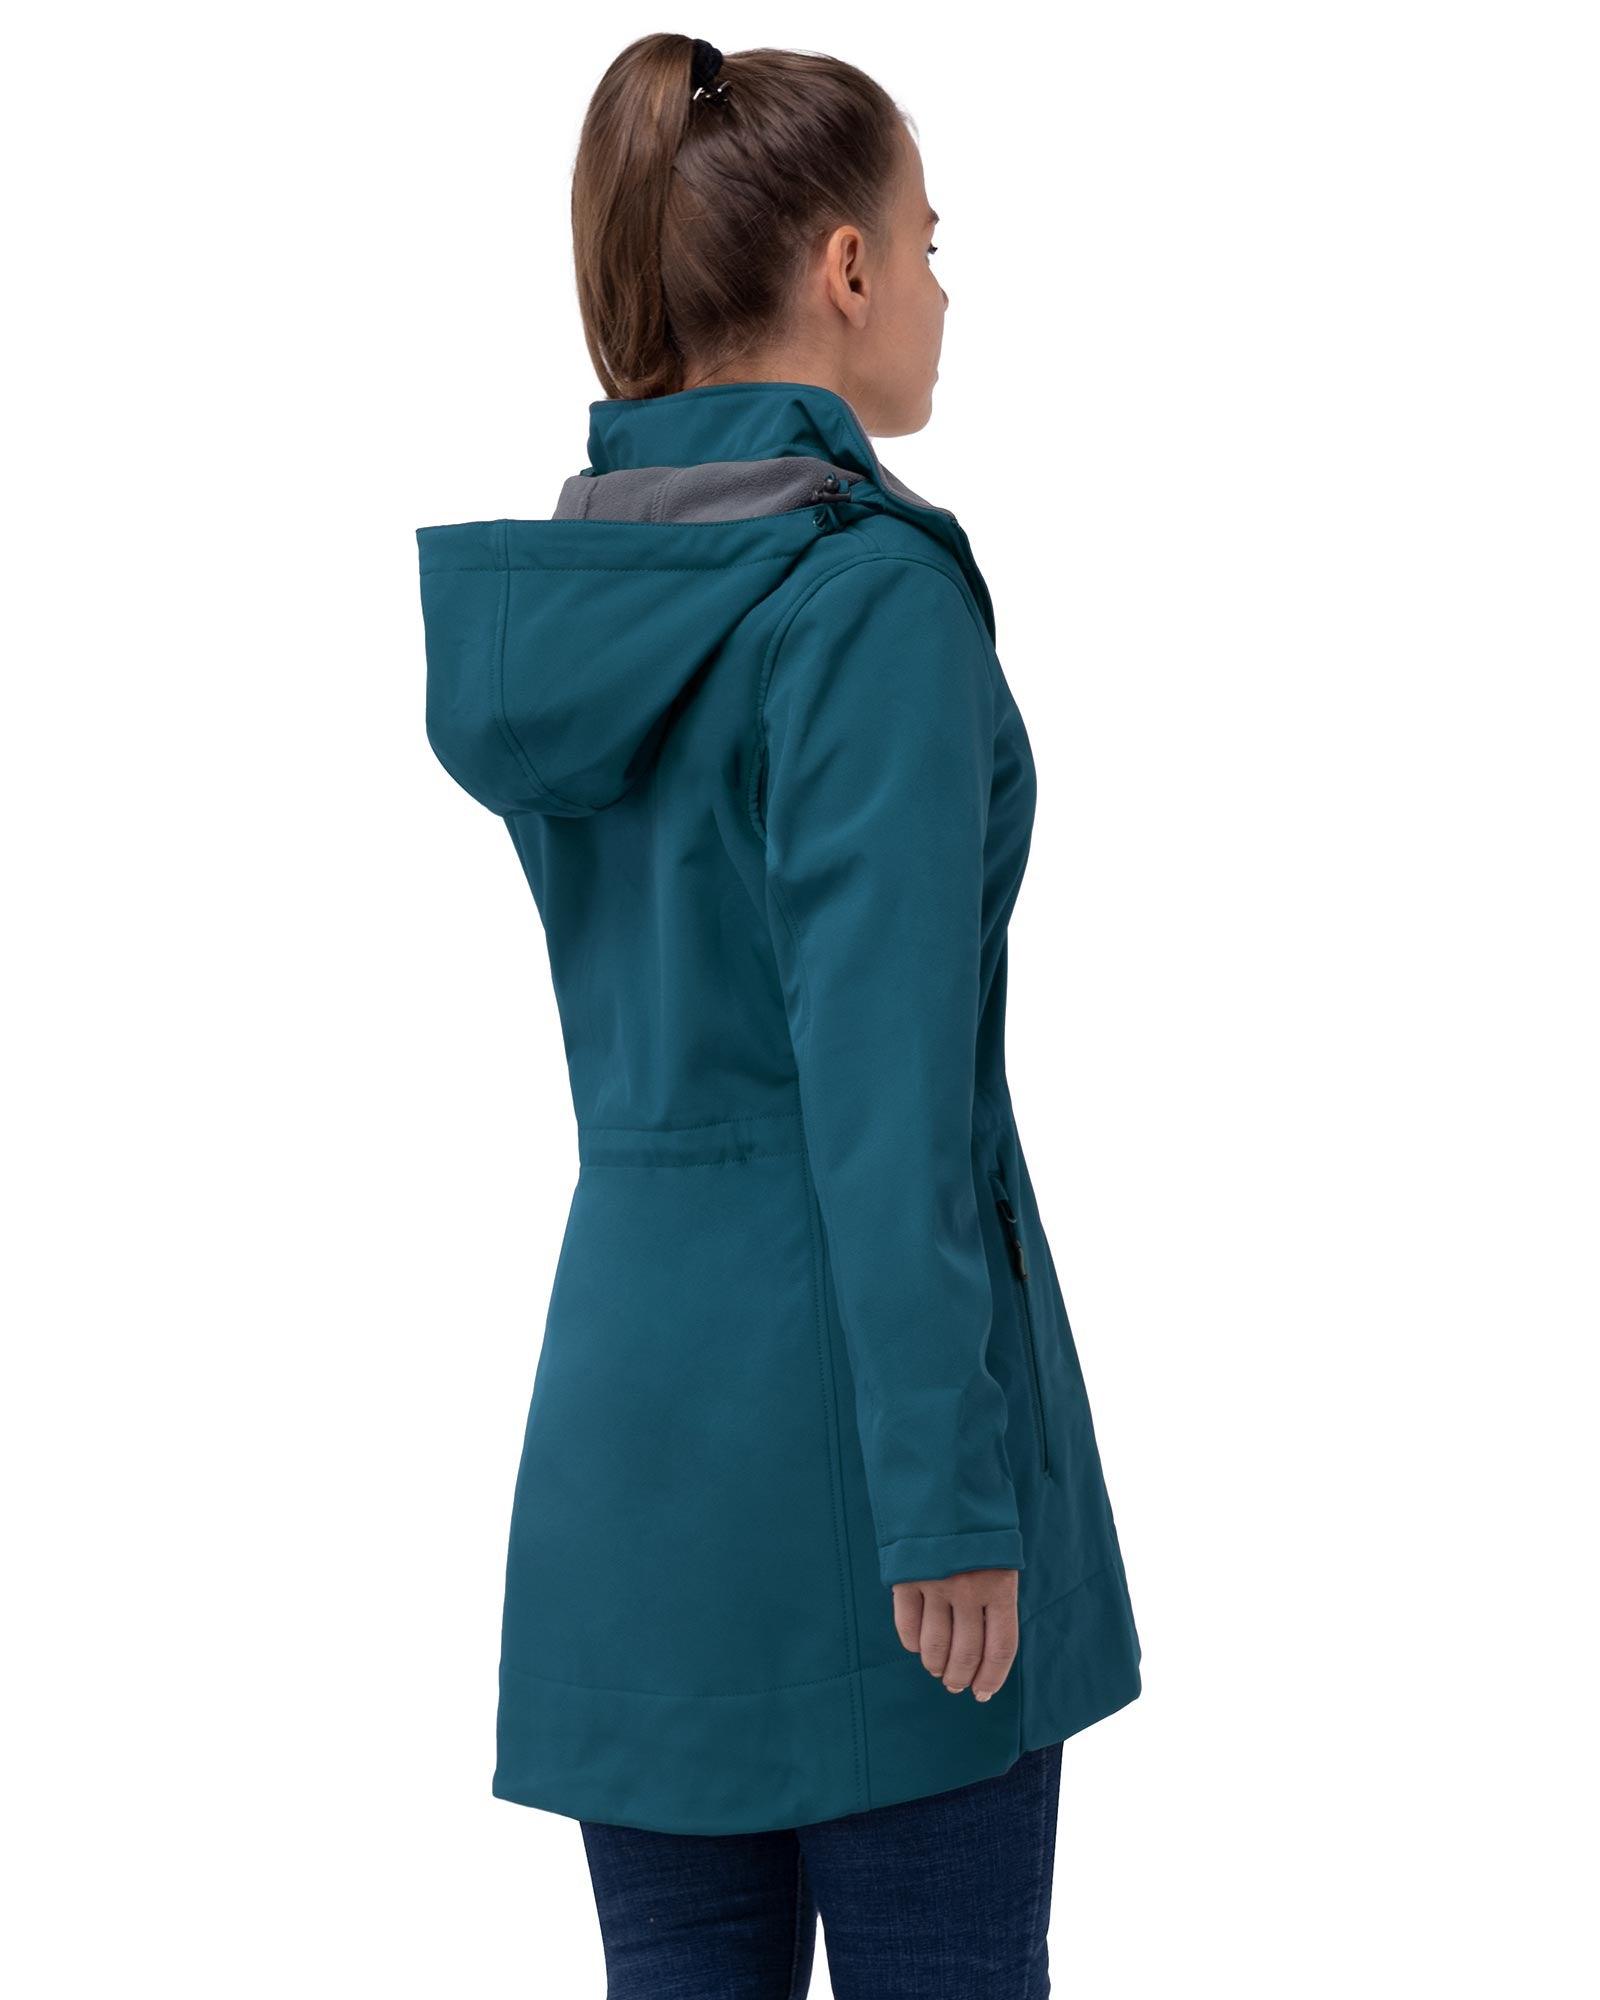 33,000ft Mens Rain Suit with Hideaway Hood Waterproof Rain Gear Black  Medium (Jackets and Pants) 